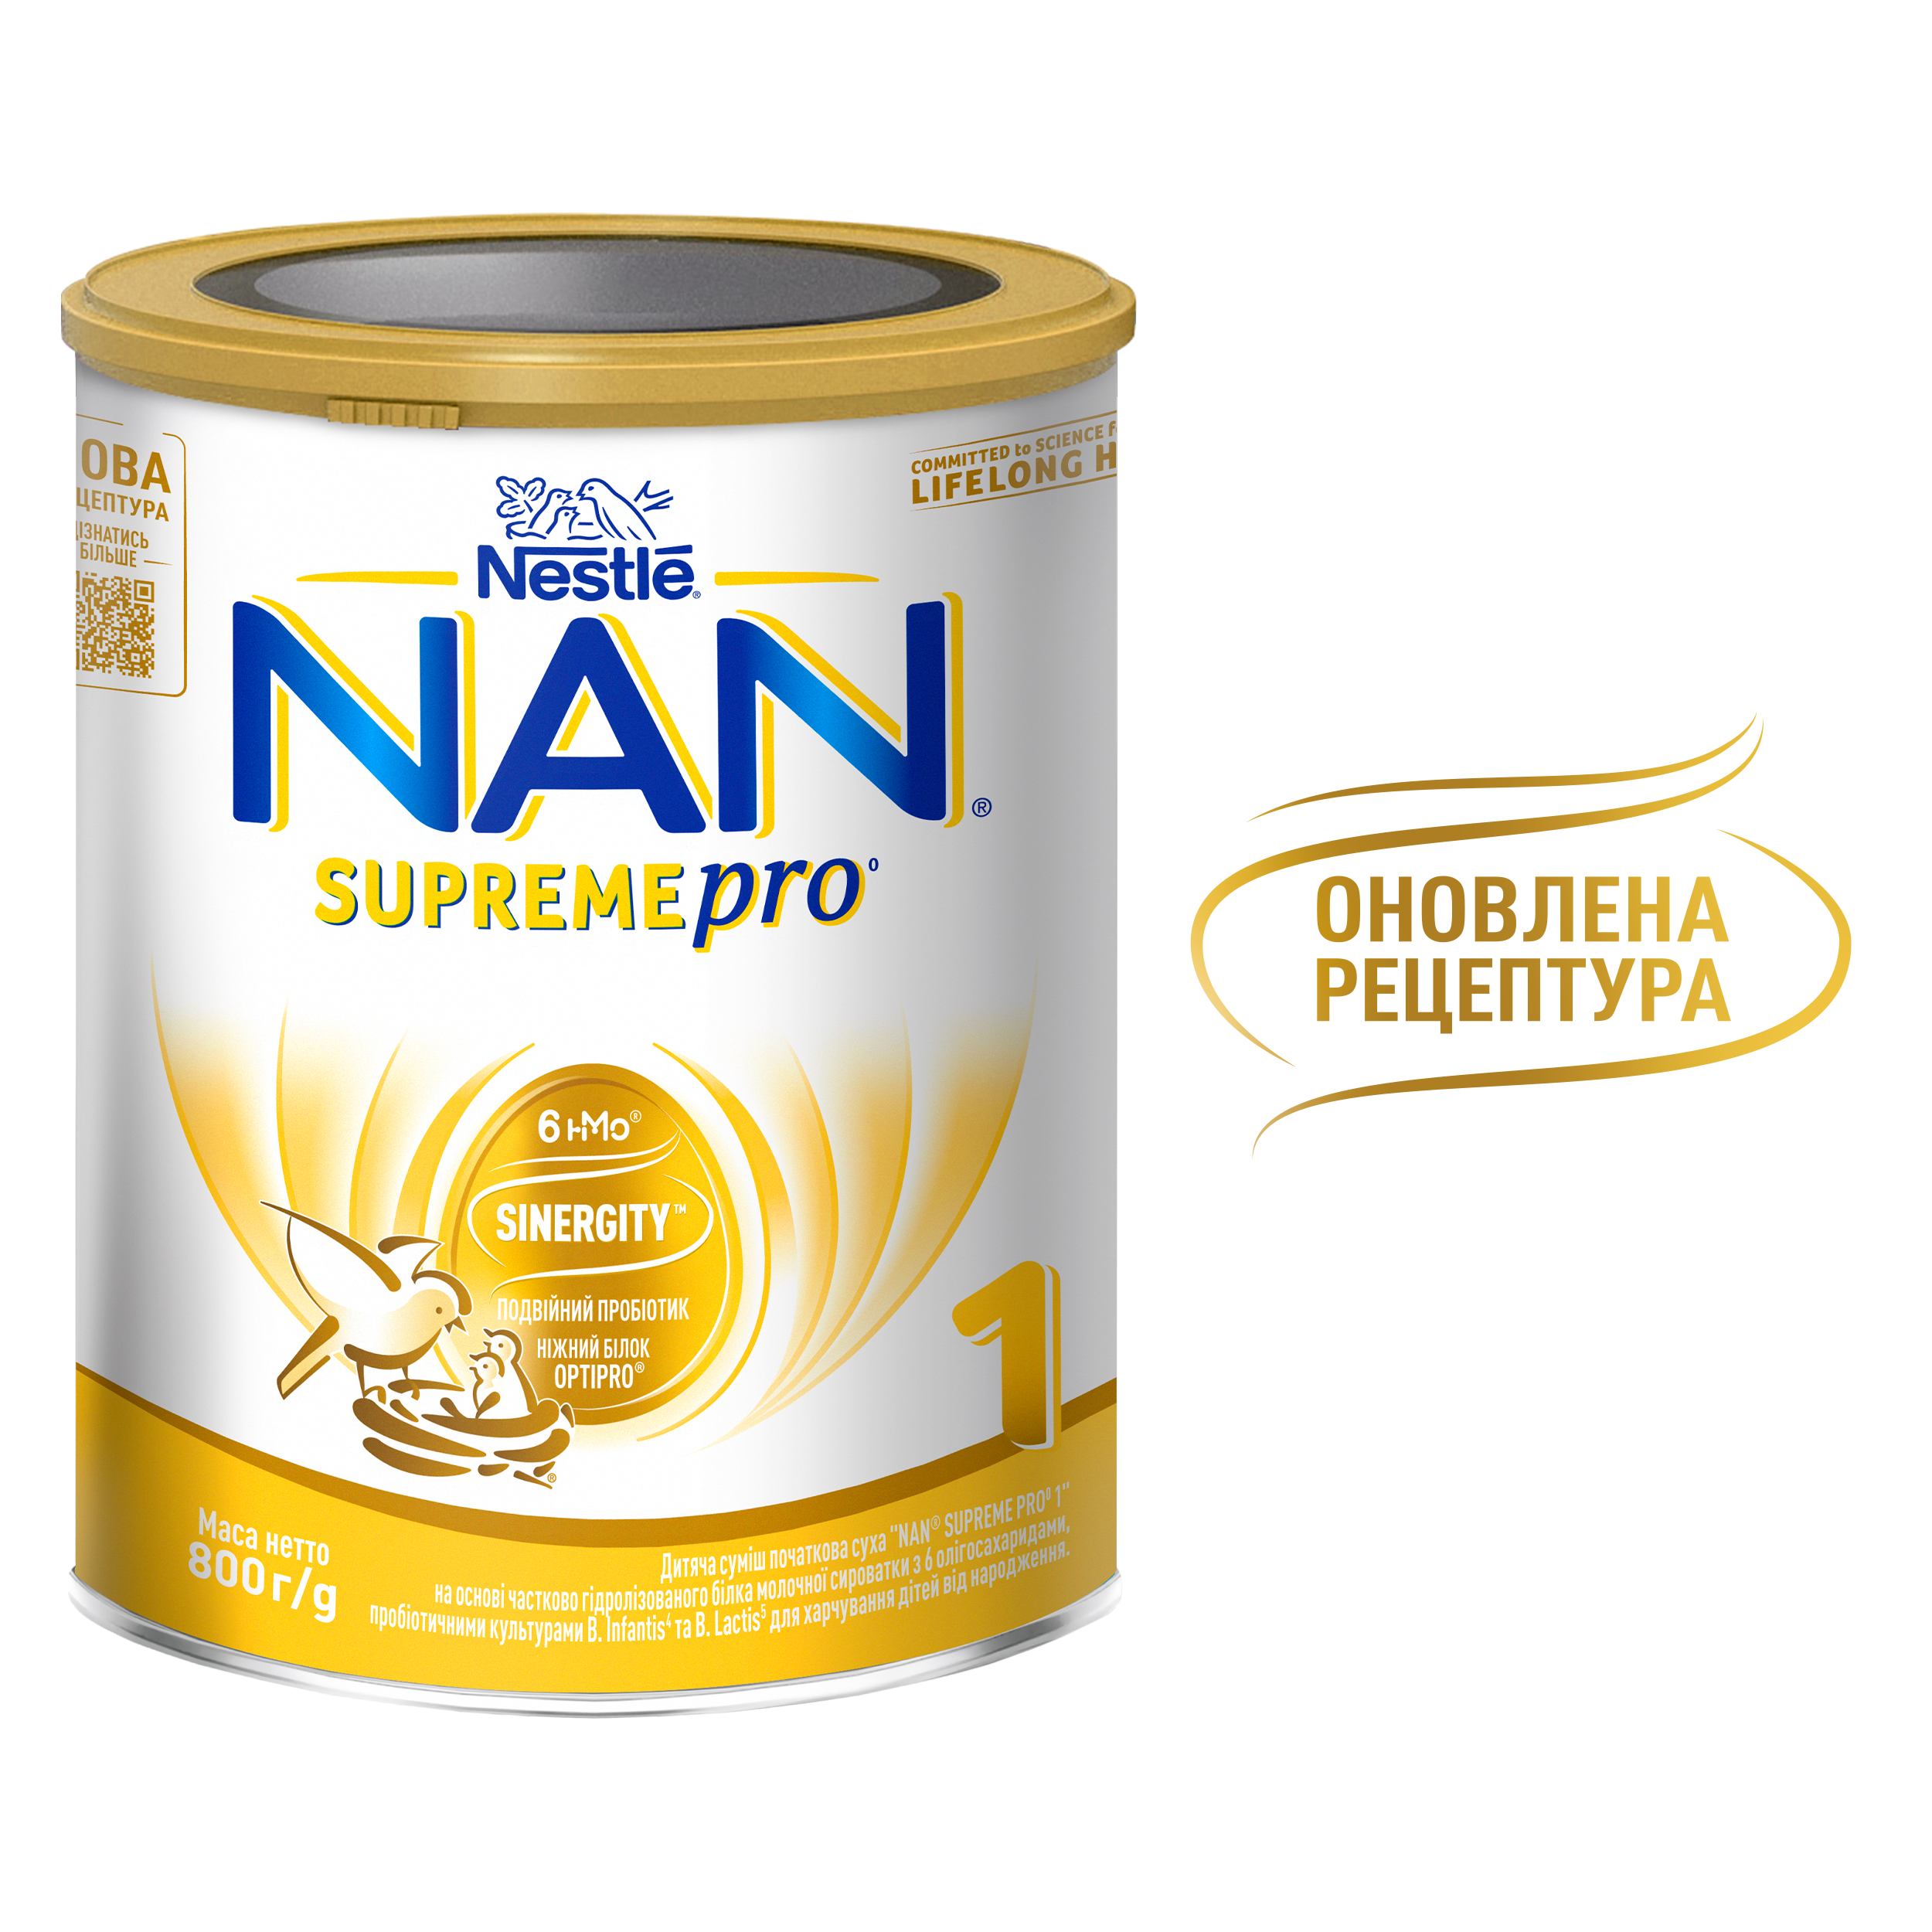 Суха молочна суміш NAN Supreme Pro 1, 800 г - фото 7